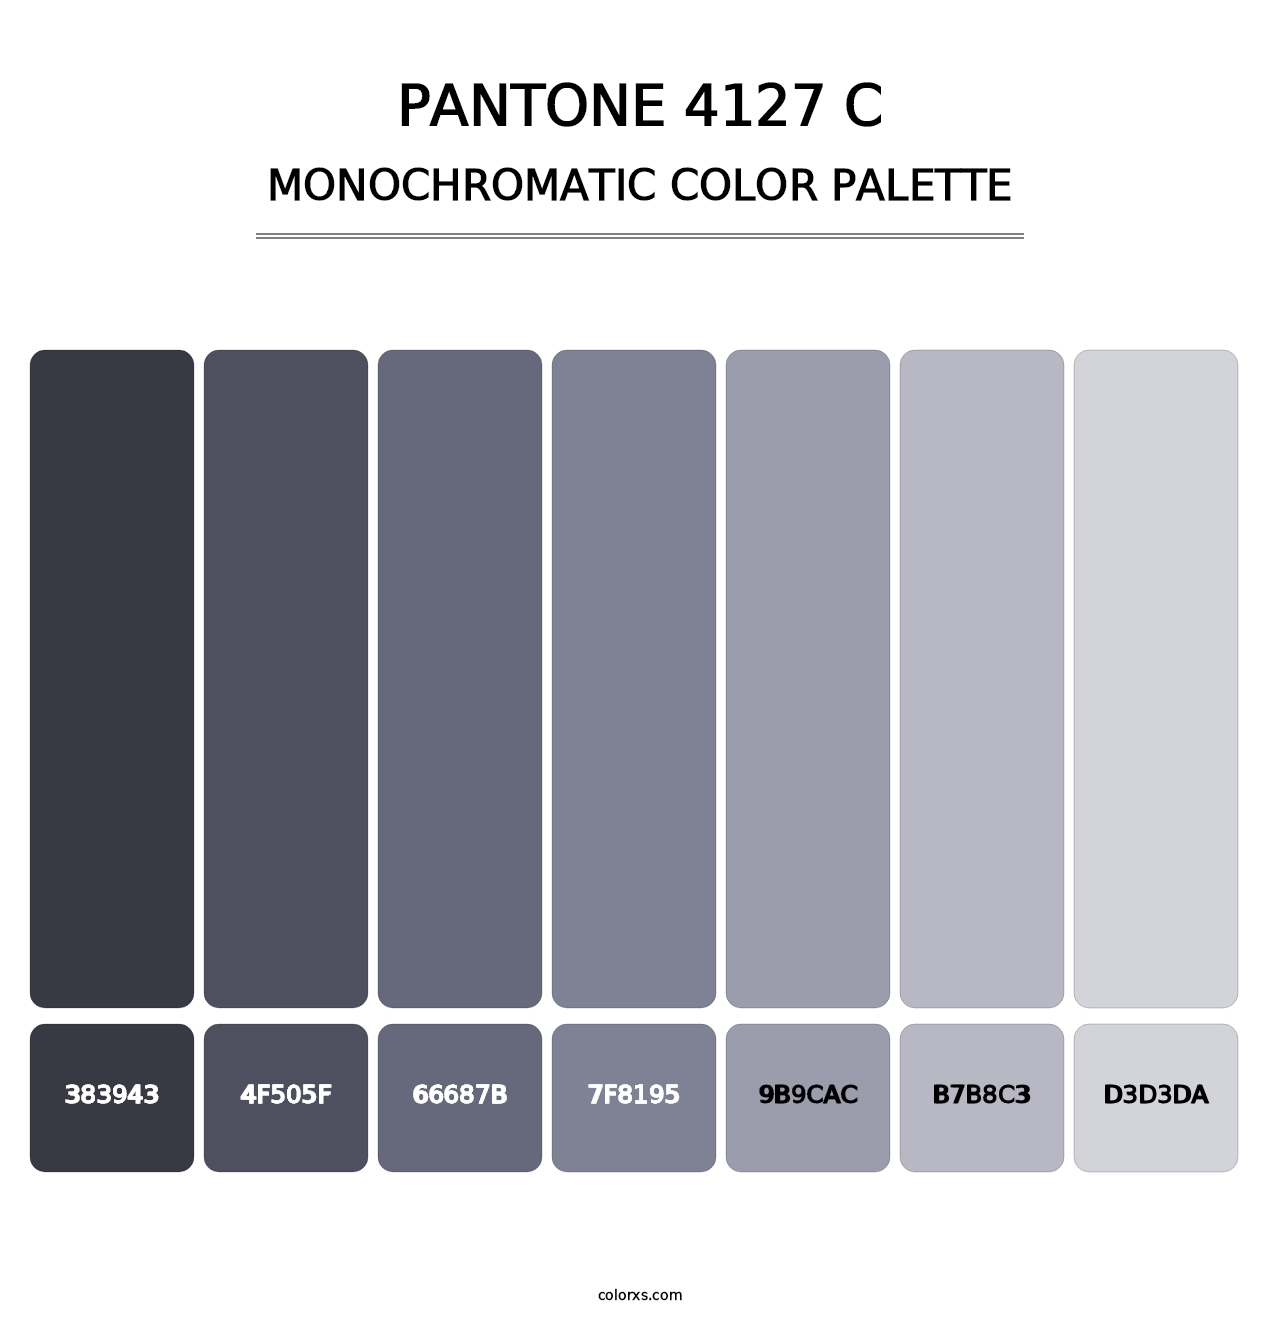 PANTONE 4127 C - Monochromatic Color Palette